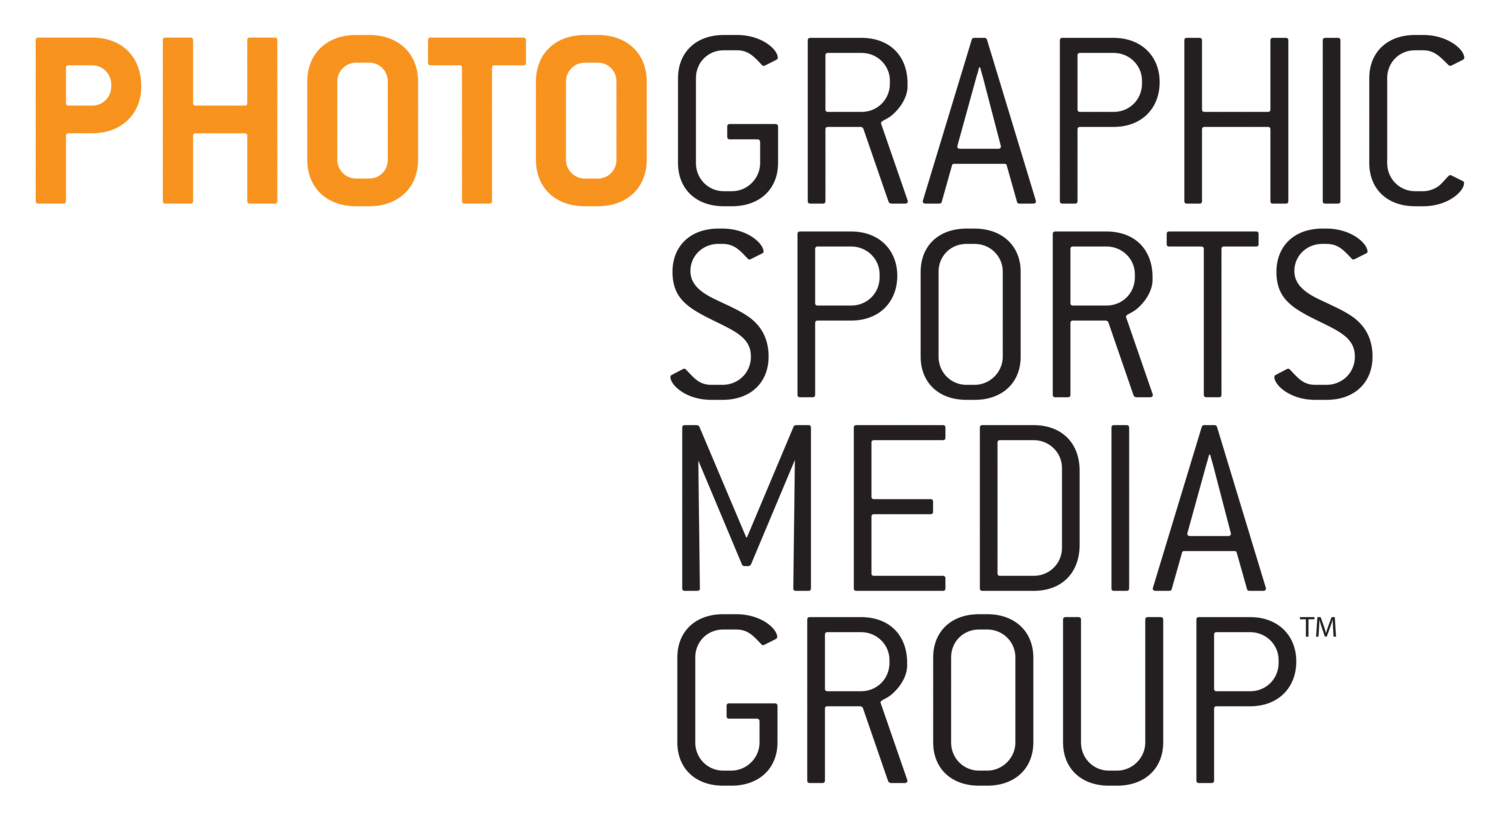 PhotographicSportsMediaGroup